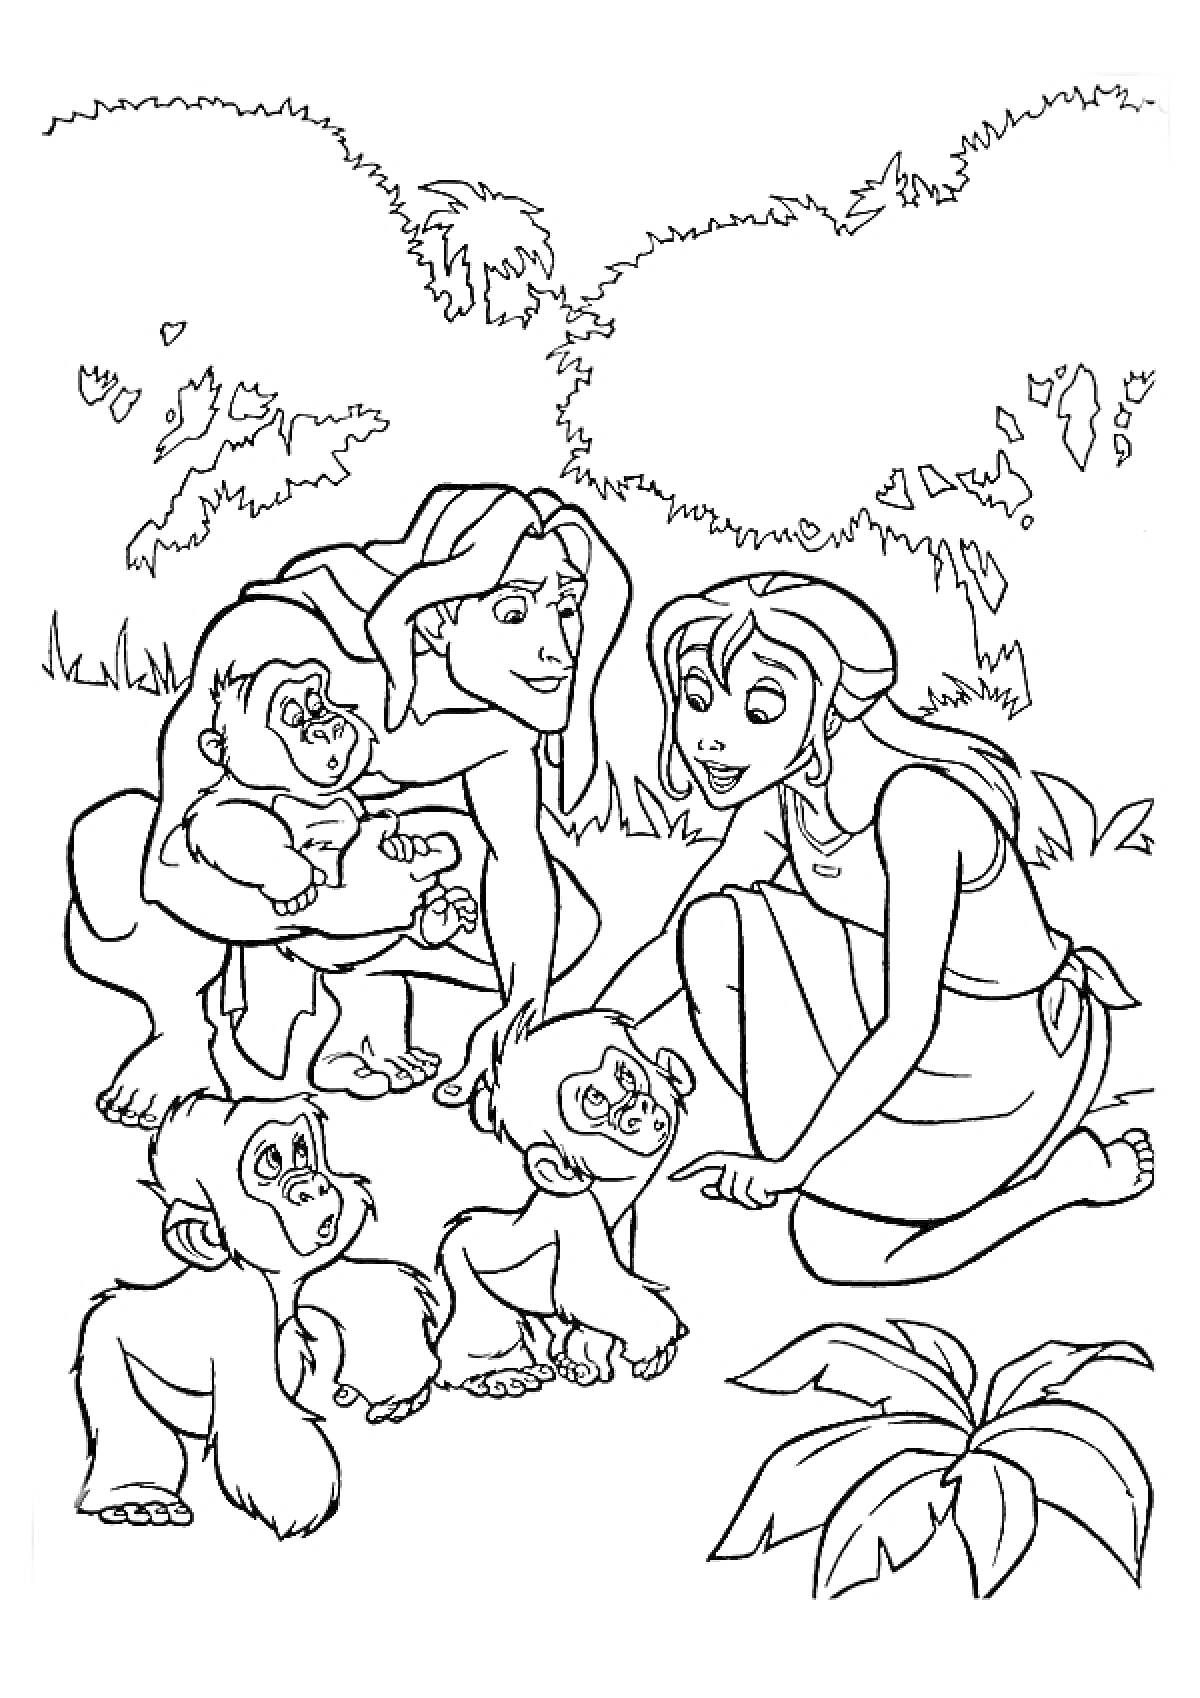 Раскраска Тарзан и женщина с тремя малышами-обезьянками в джунглях